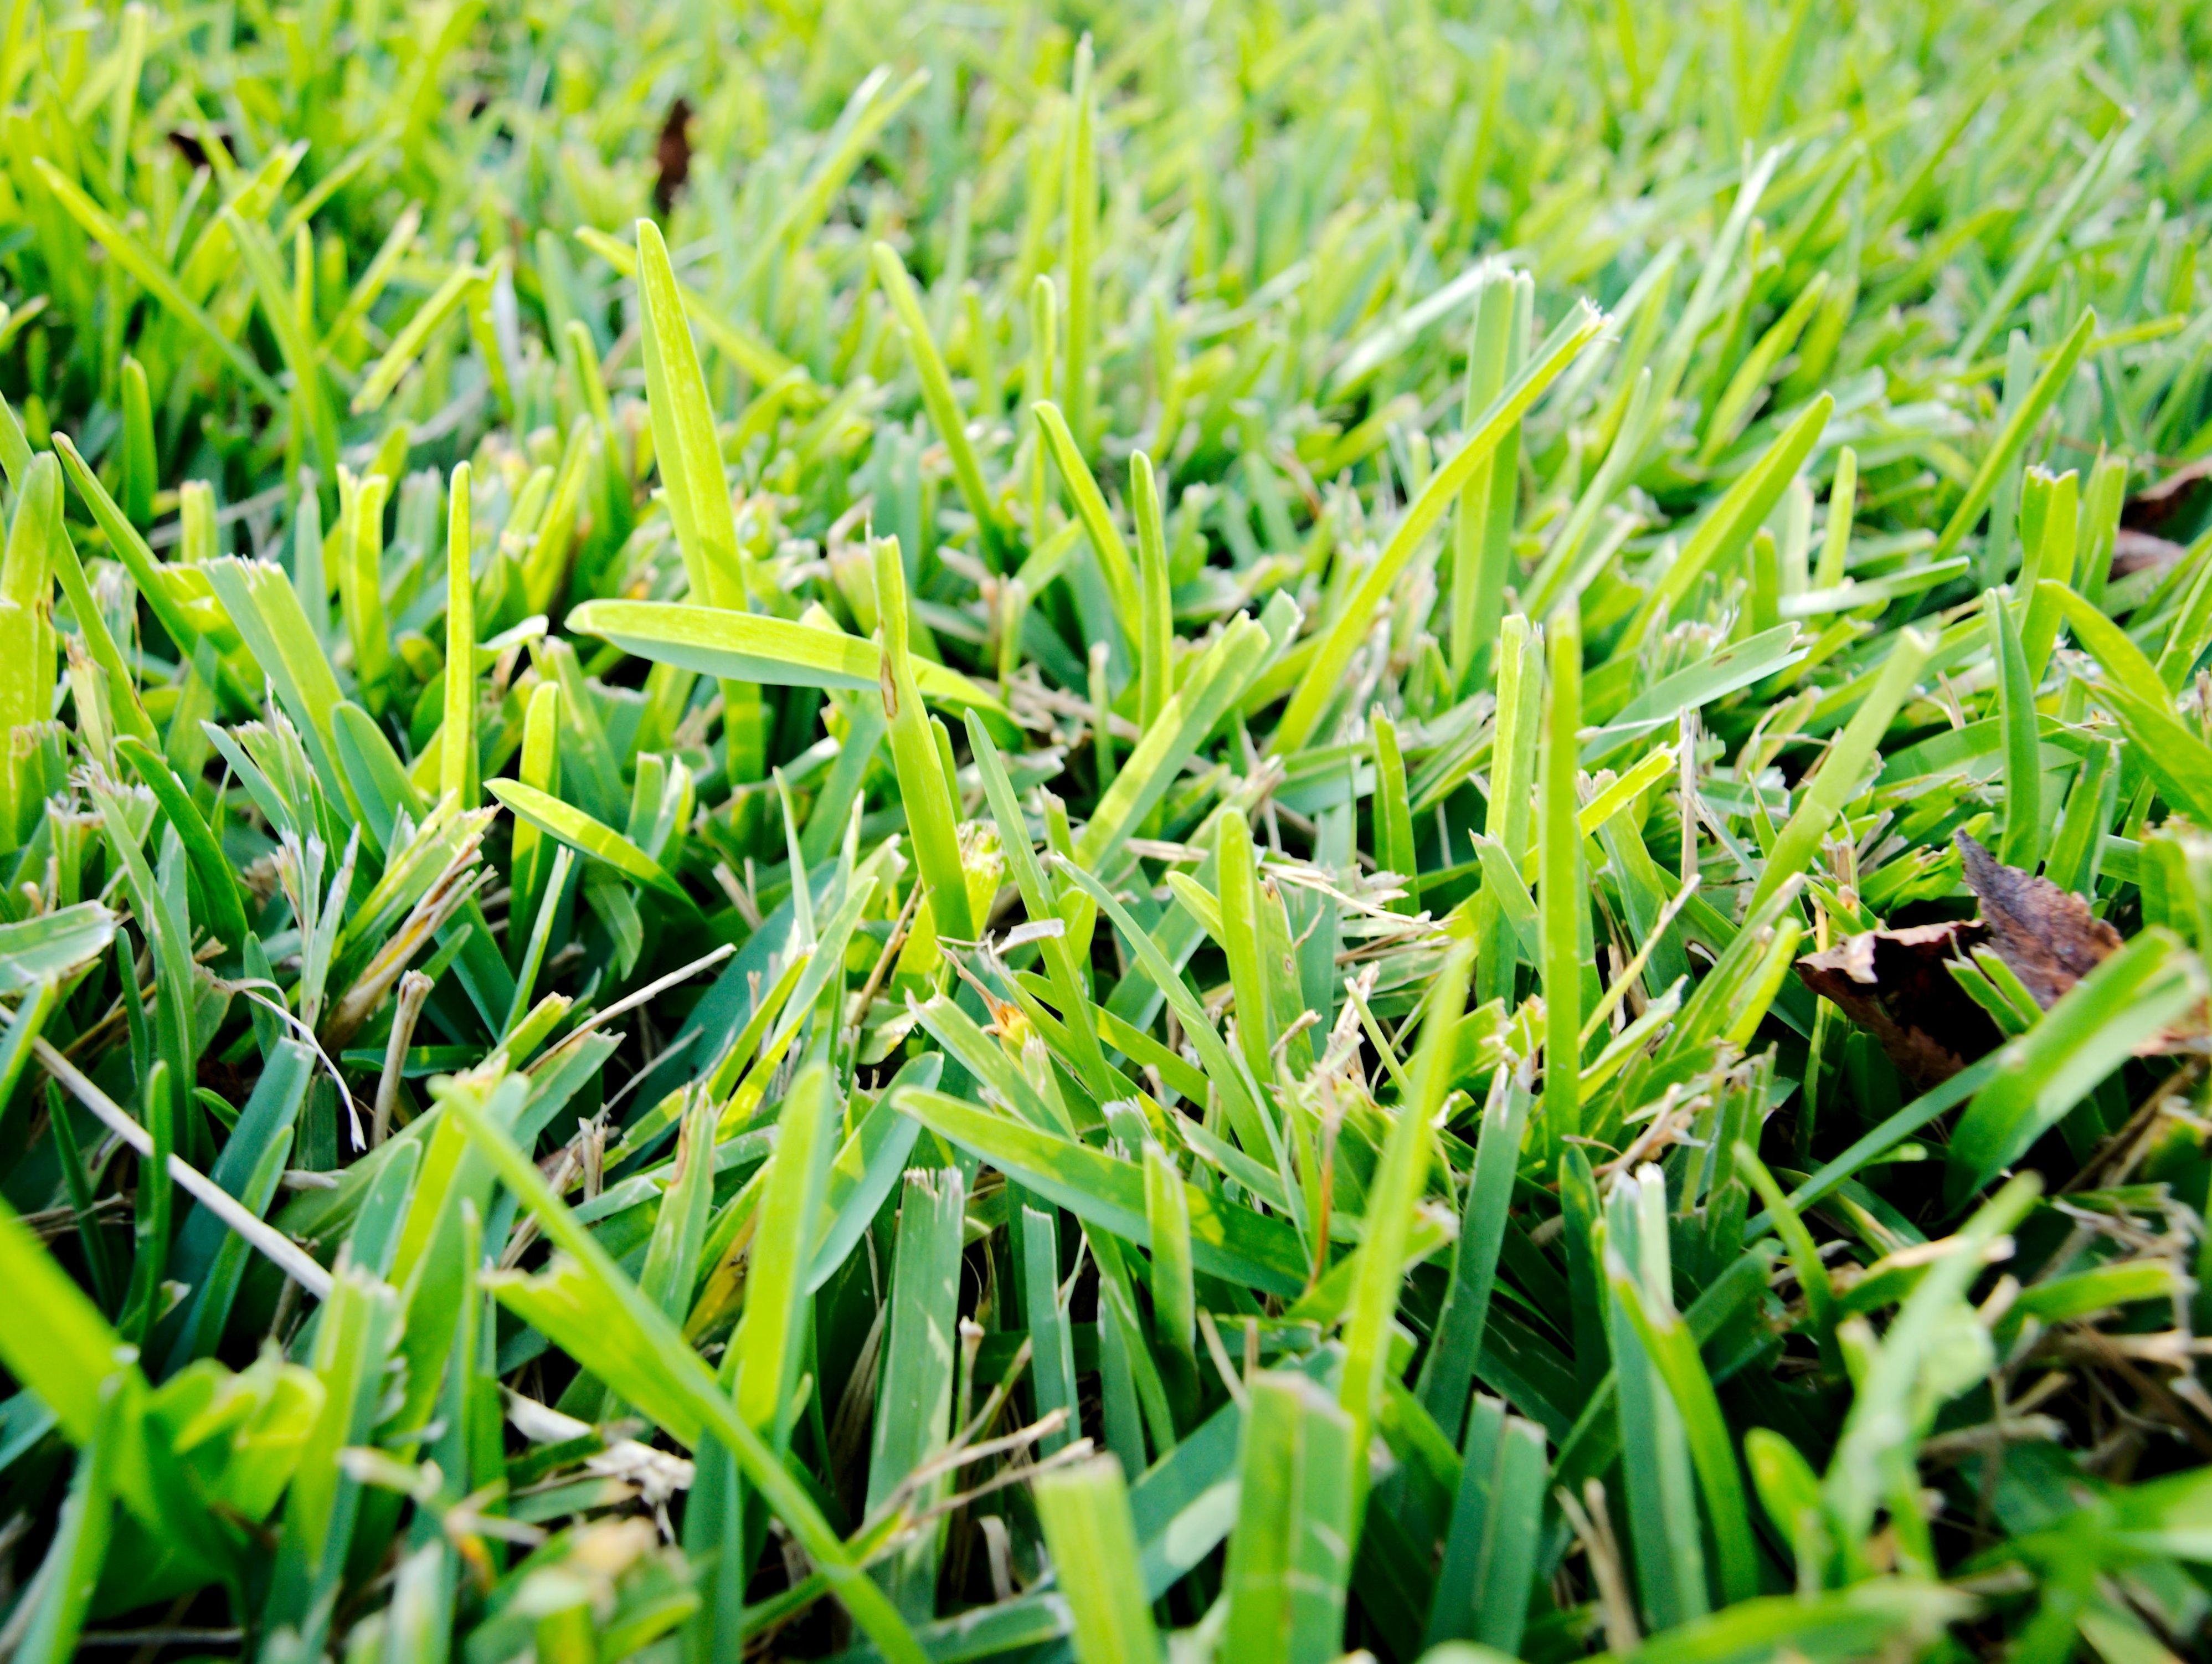 saint augustine grass